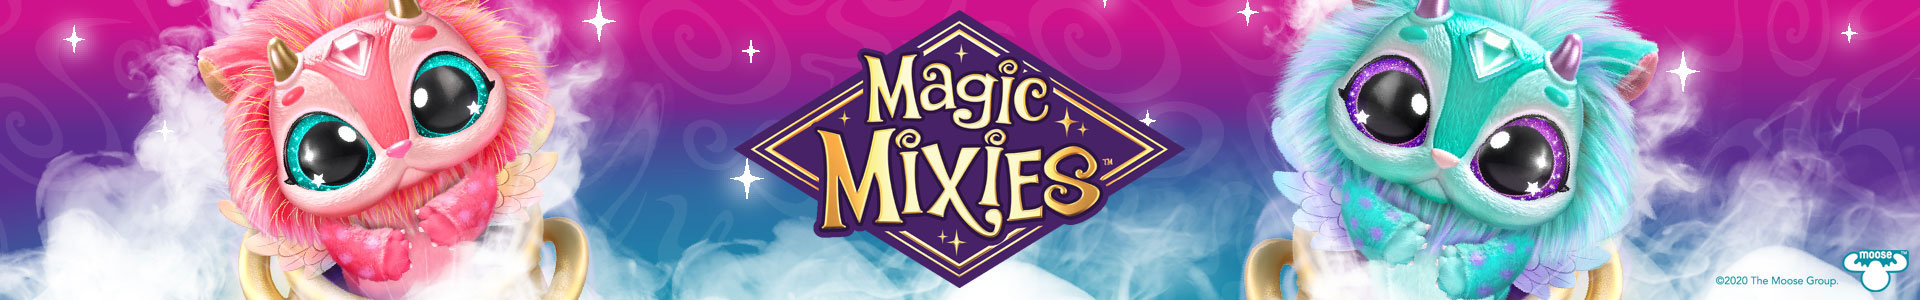 Magic Mixies - Magic Mixies